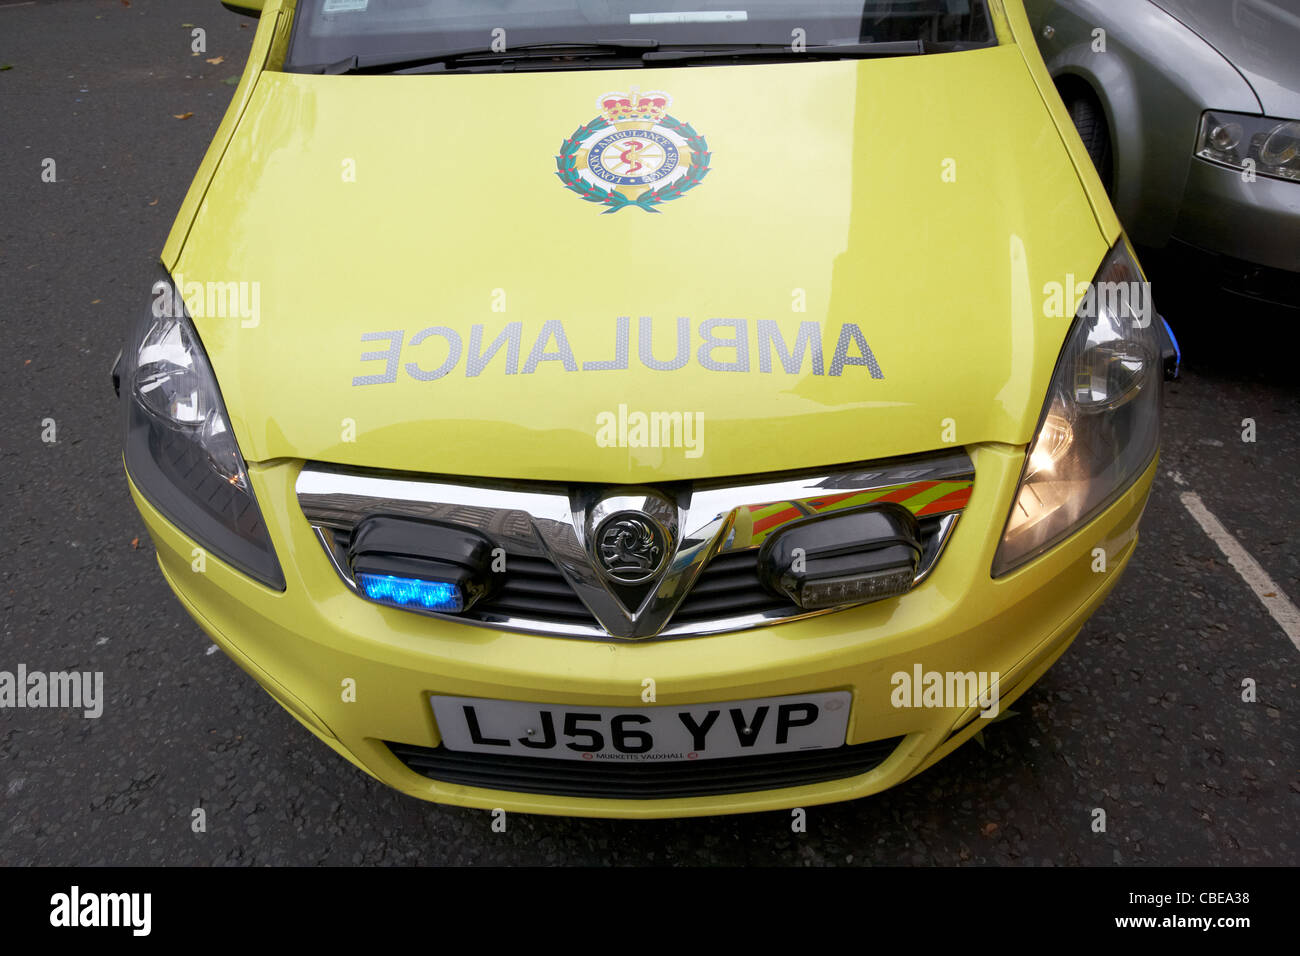 Parte anteriore del nhs london servizio ambulanza paramedico veloce veicolo di risposta a un incidente in Londra England Regno Unito Regno Unito Foto Stock